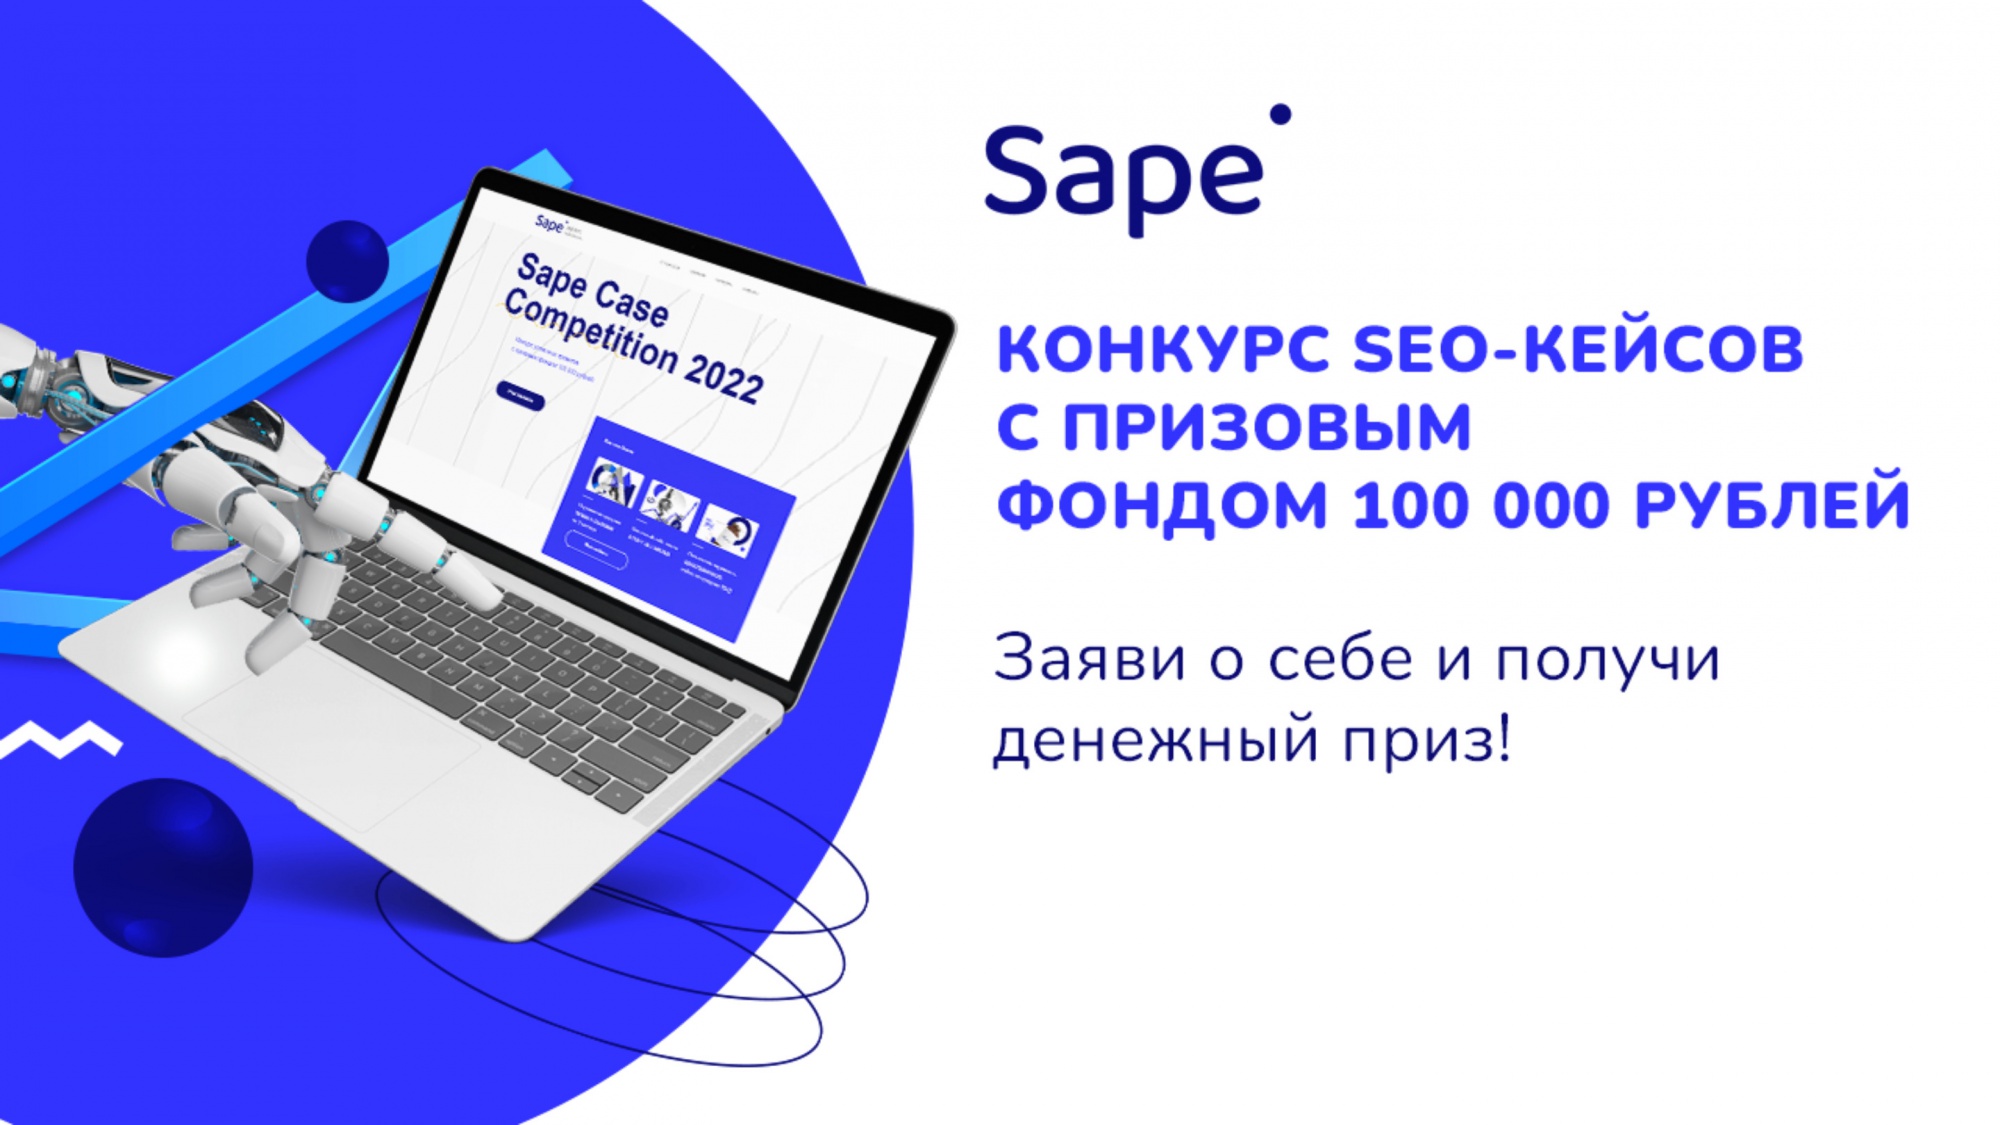 Sape объявляет о проведении глобального конкурса SEO-проектов Sape Case Competition 2022